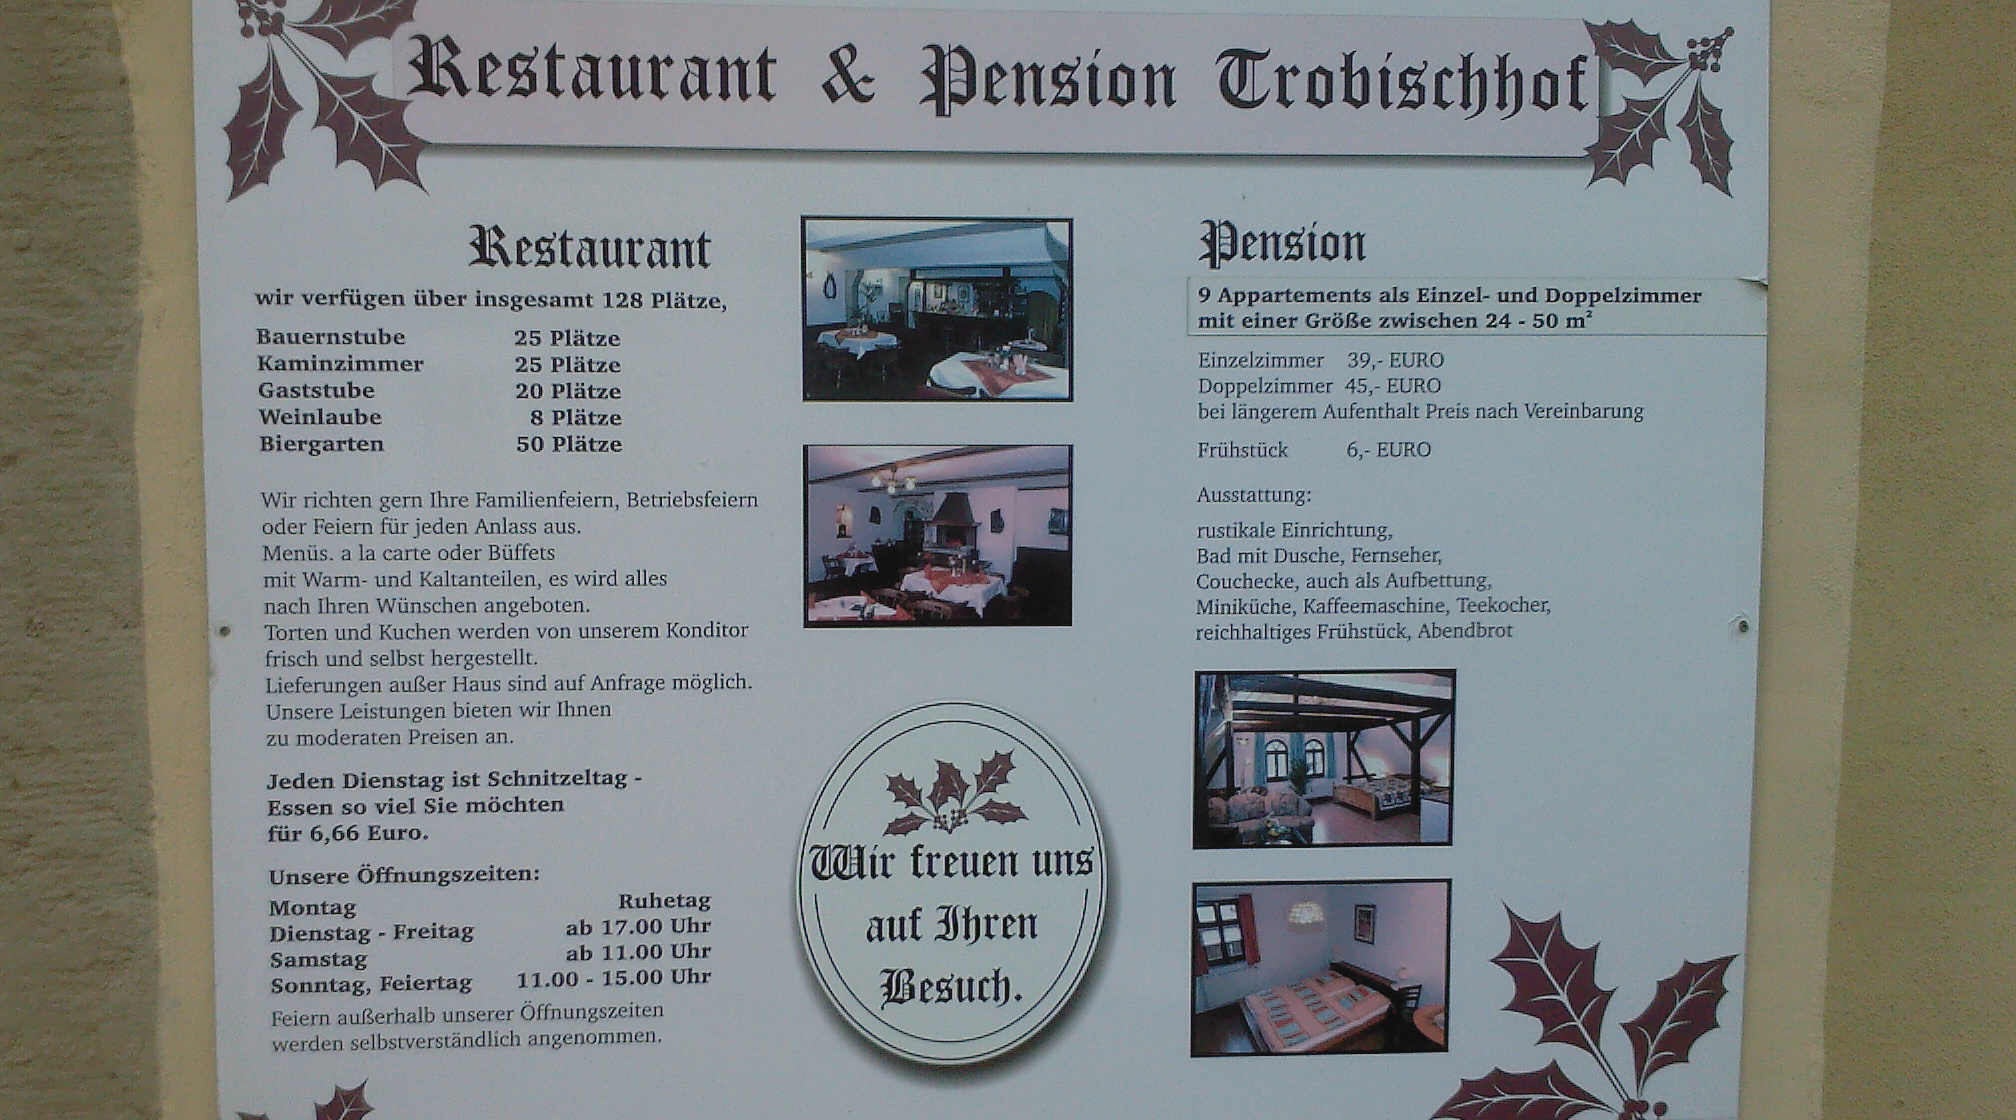 Pension und Restaurant Trobischhof: Die Preise